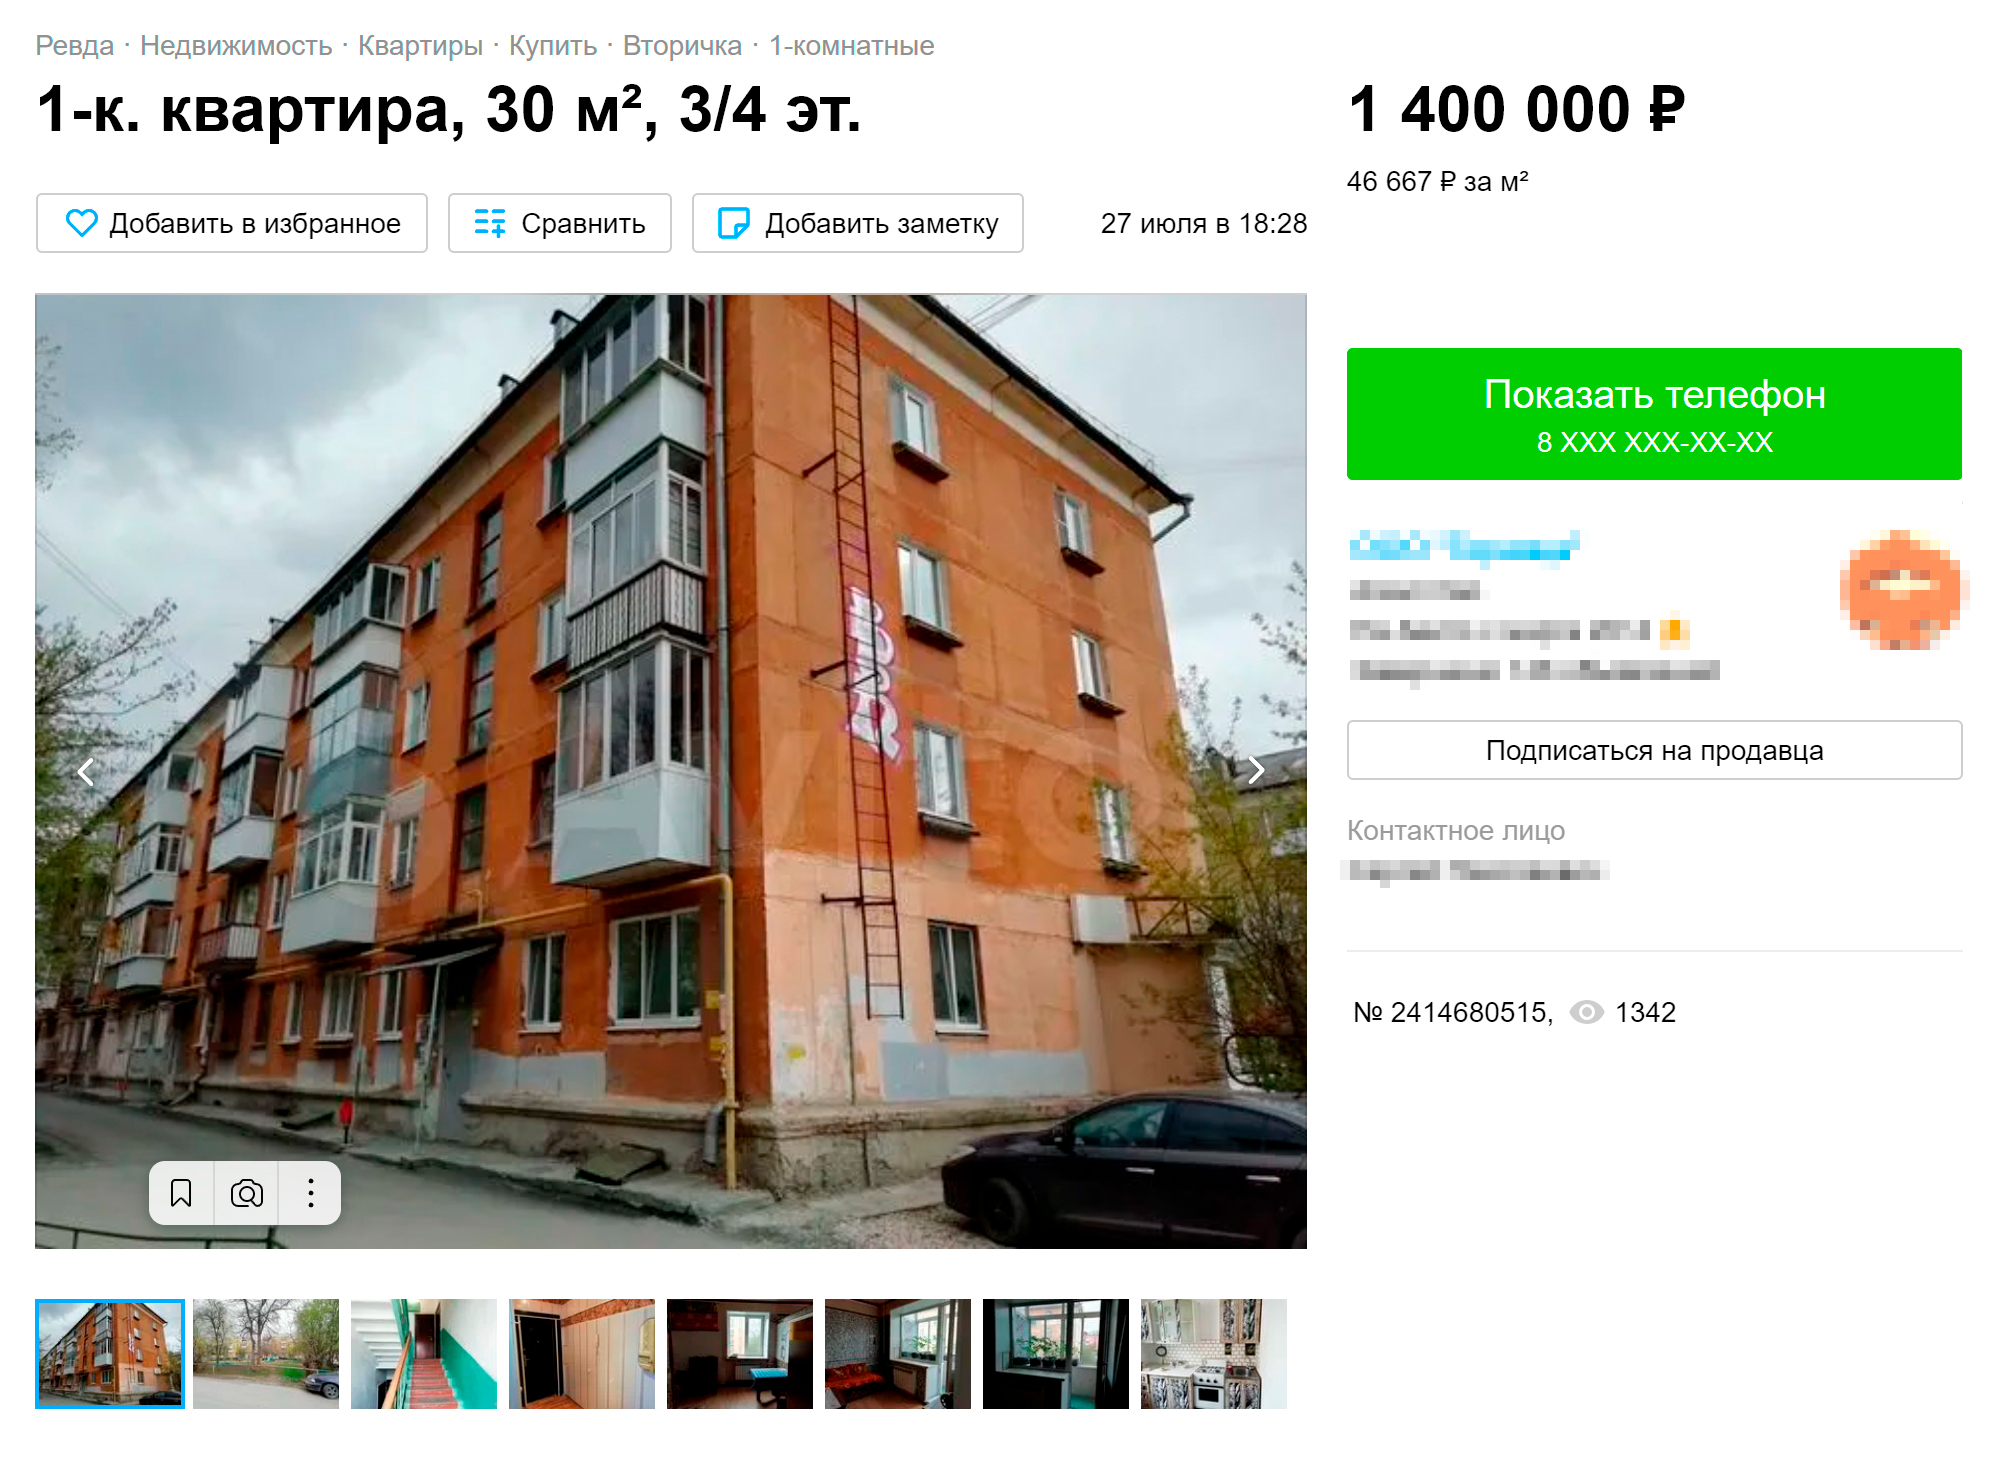 Цены на жилье в центральной части города — хрущевки и брежневки — несколько меньше. За однушку придется отдать около 1,5 млн. Источник: avito.ru